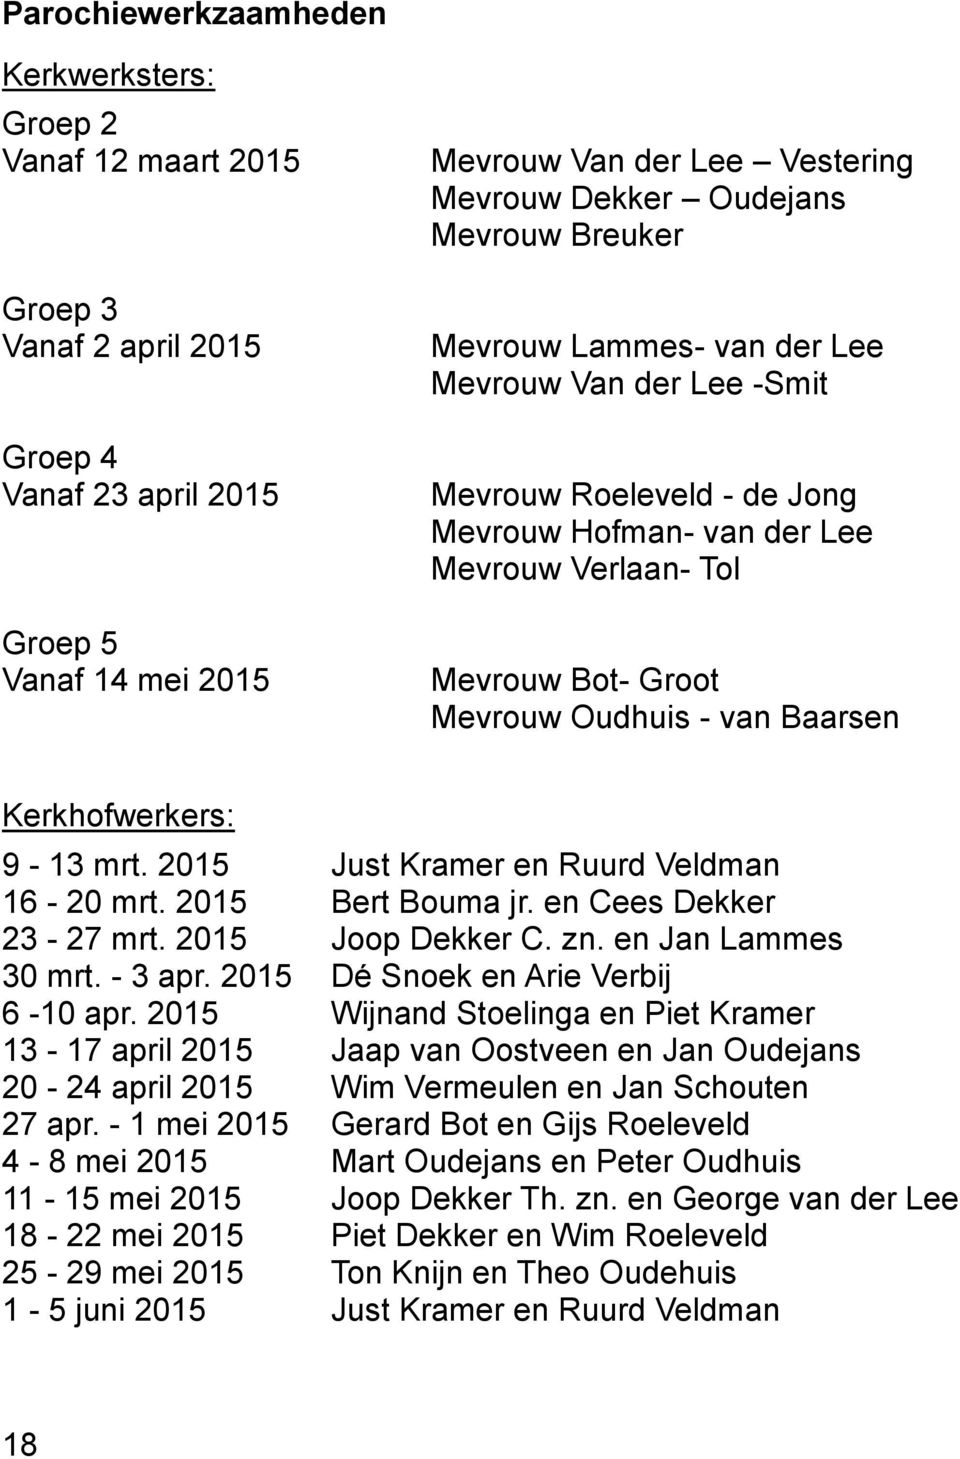 Kerkhofwerkers: 9-13 mrt. 2015 Just Kramer en Ruurd Veldman 16-20 mrt. 2015 Bert Bouma jr. en Cees Dekker 23-27 mrt. 2015 Joop Dekker C. zn. en Jan Lammes 30 mrt. - 3 apr.